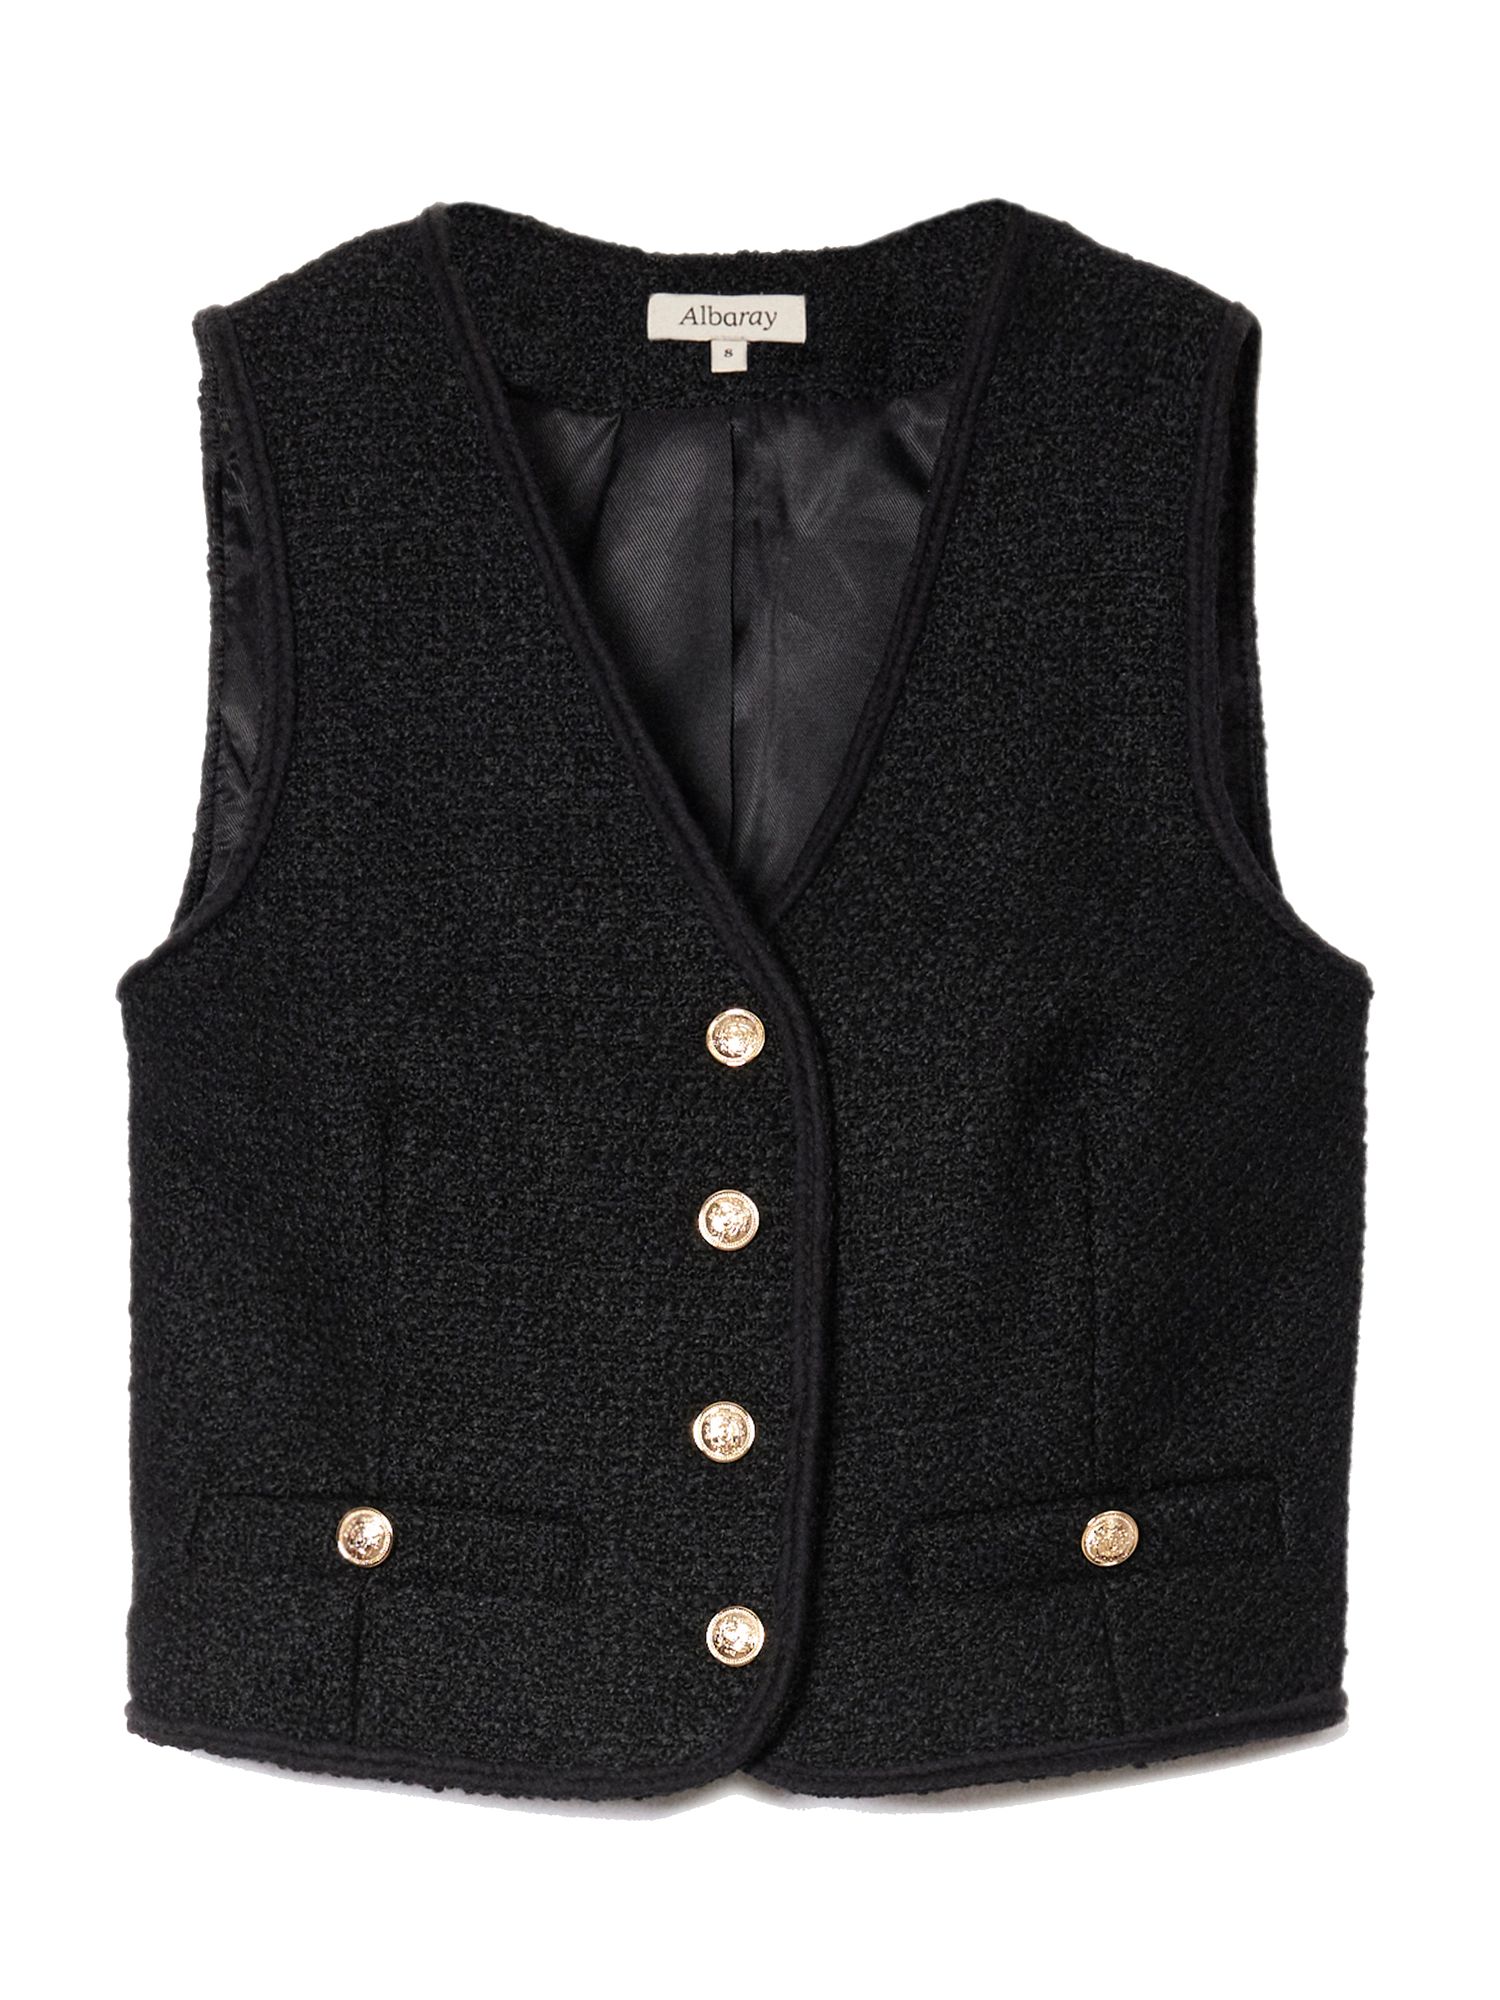 Buy Albaray Wool Blend Tweed Waistcoat, Black Online at johnlewis.com